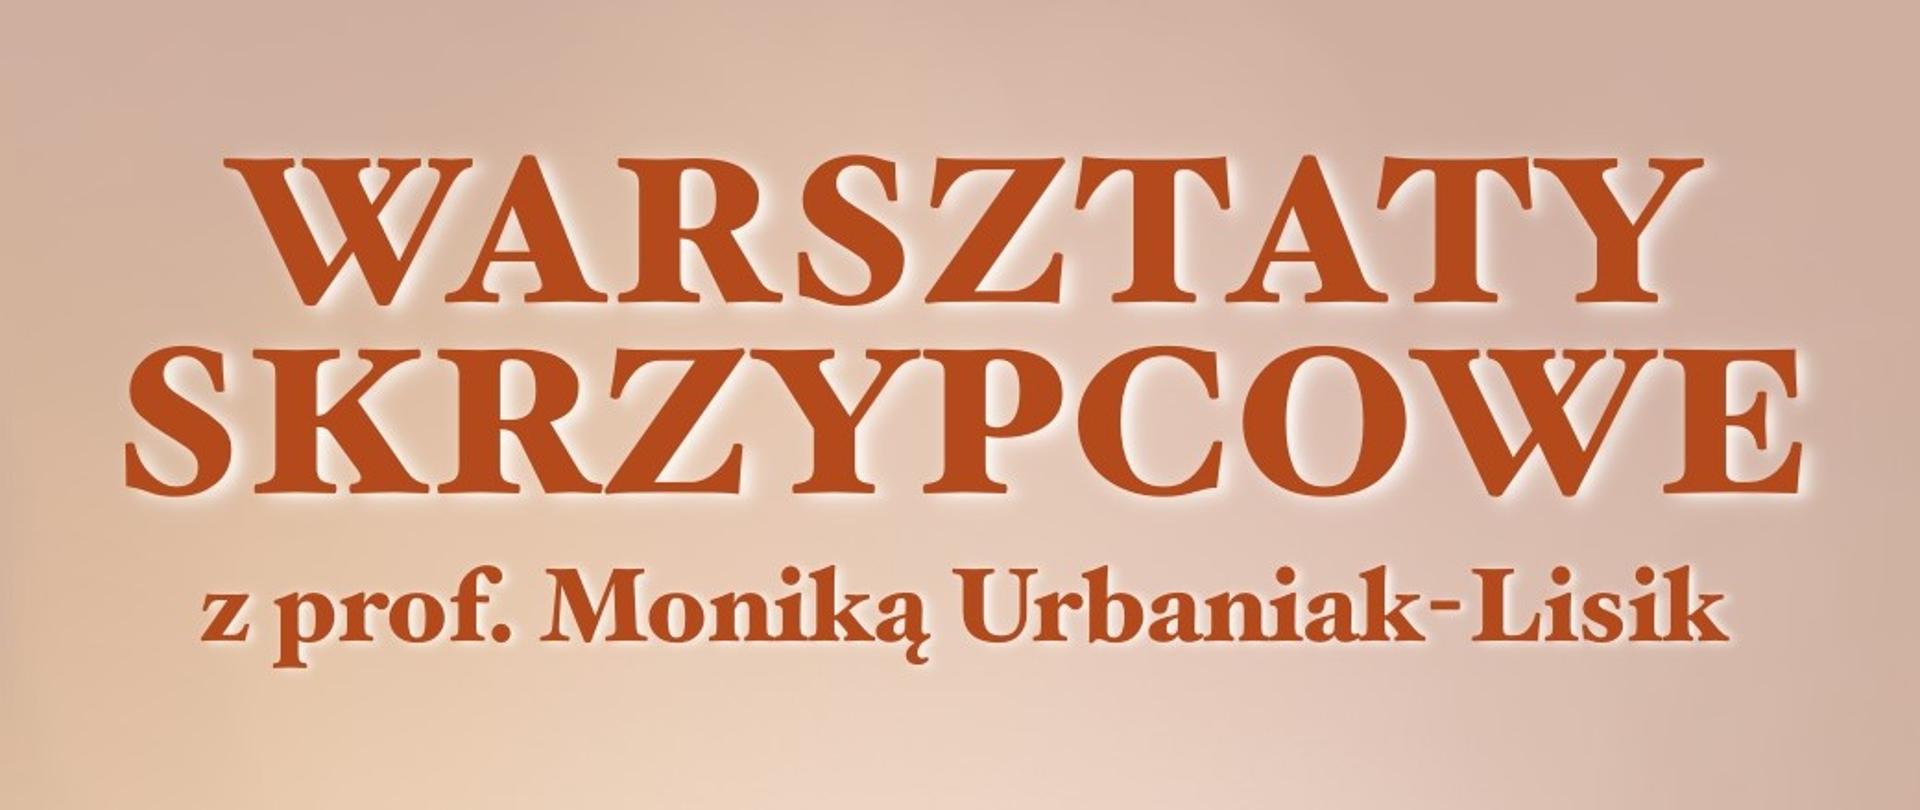 Czerwony napis Warsztaty skrzypcowe z prof. Moniką Urbaniak-Lisik na różowym tle.